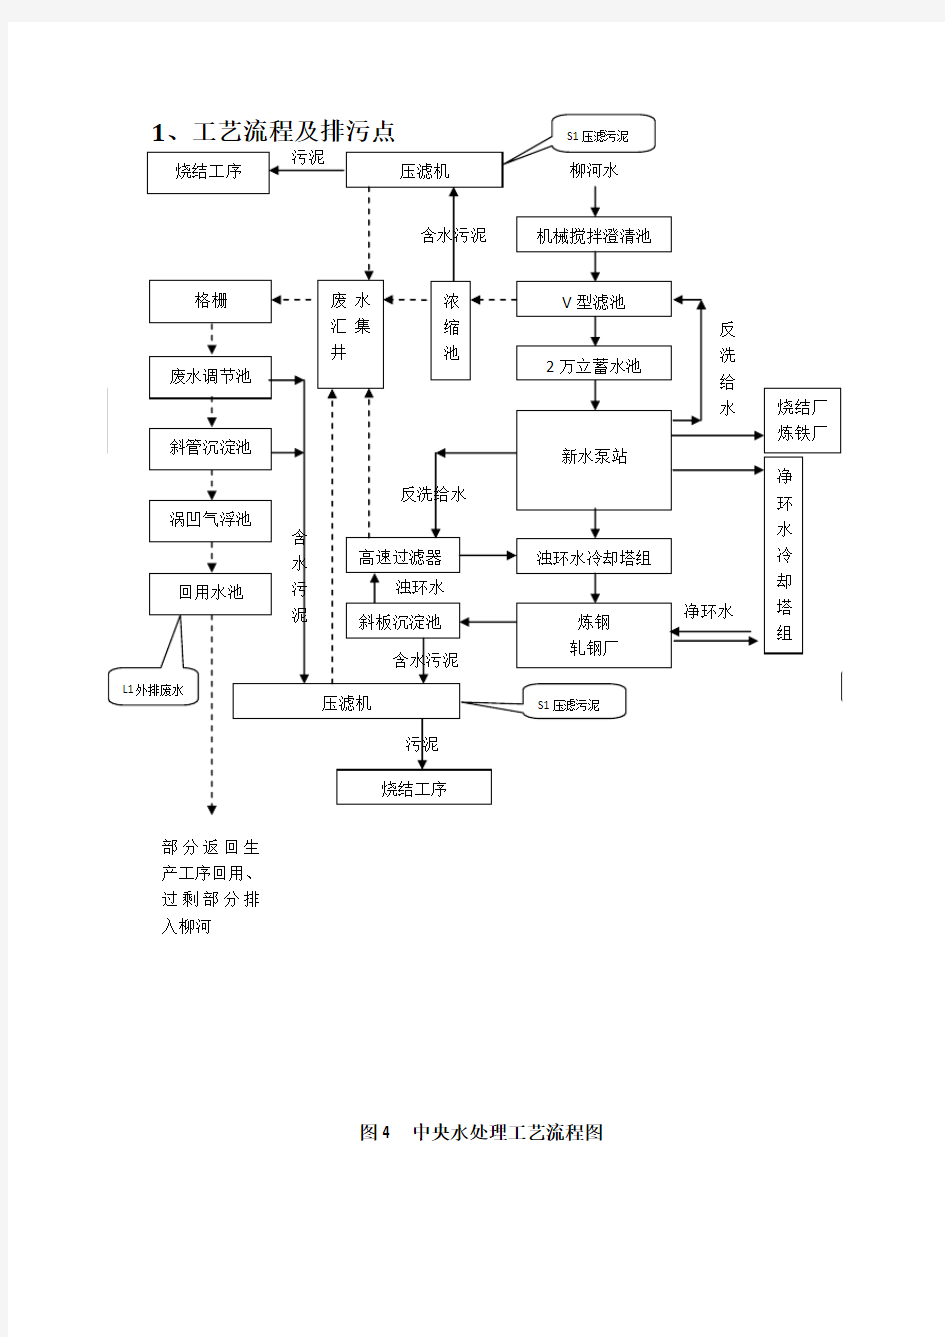 (1.31)中央水处理工艺流程图